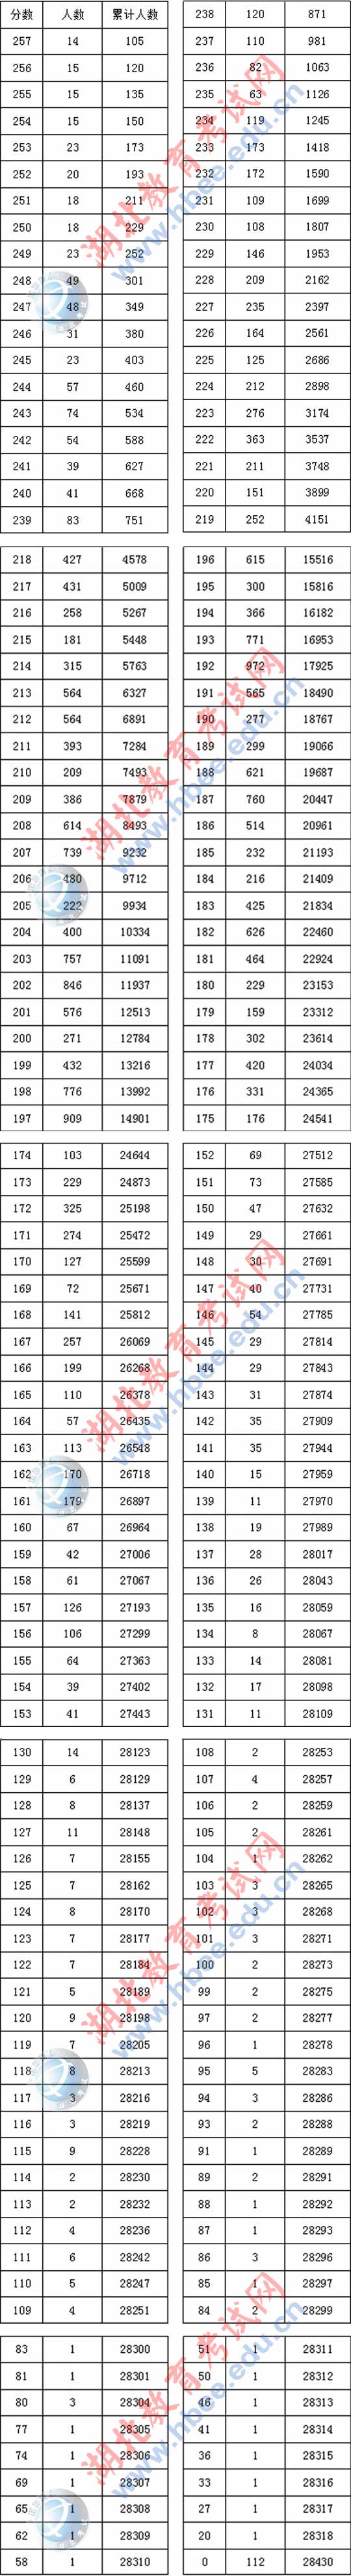 湖北省2017年美术统考成绩分段表